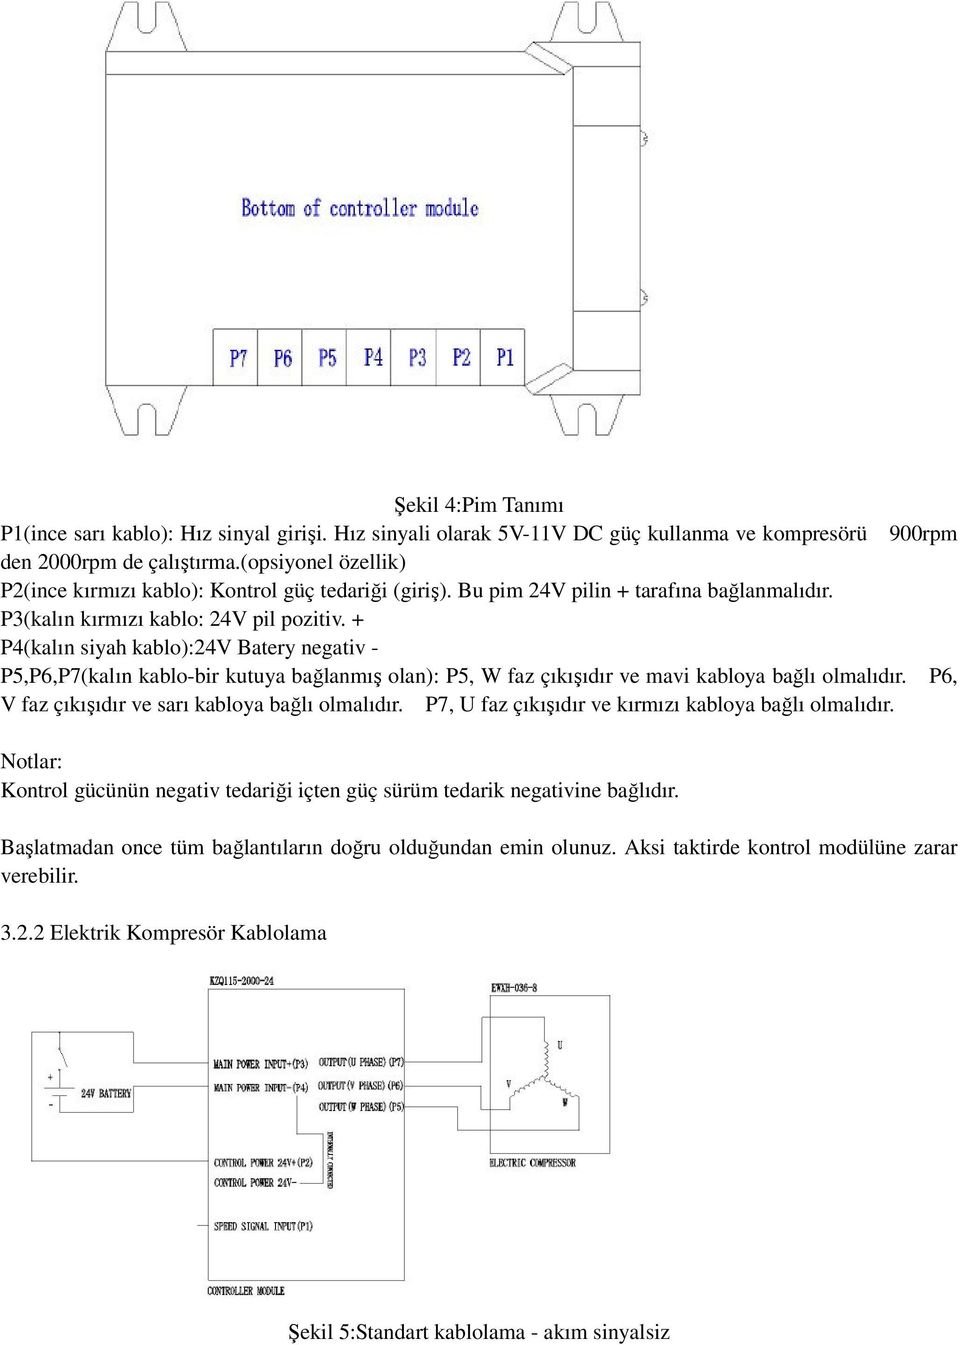 + P4(kalın siyah kablo):24v Batery negativ - P5,P6,P7(kalın kablo-bir kutuya bağlanmış olan): P5, W faz çıkışıdır ve mavi kabloya bağlı olmalıdır. P6, V faz çıkışıdır ve sarı kabloya bağlı olmalıdır.